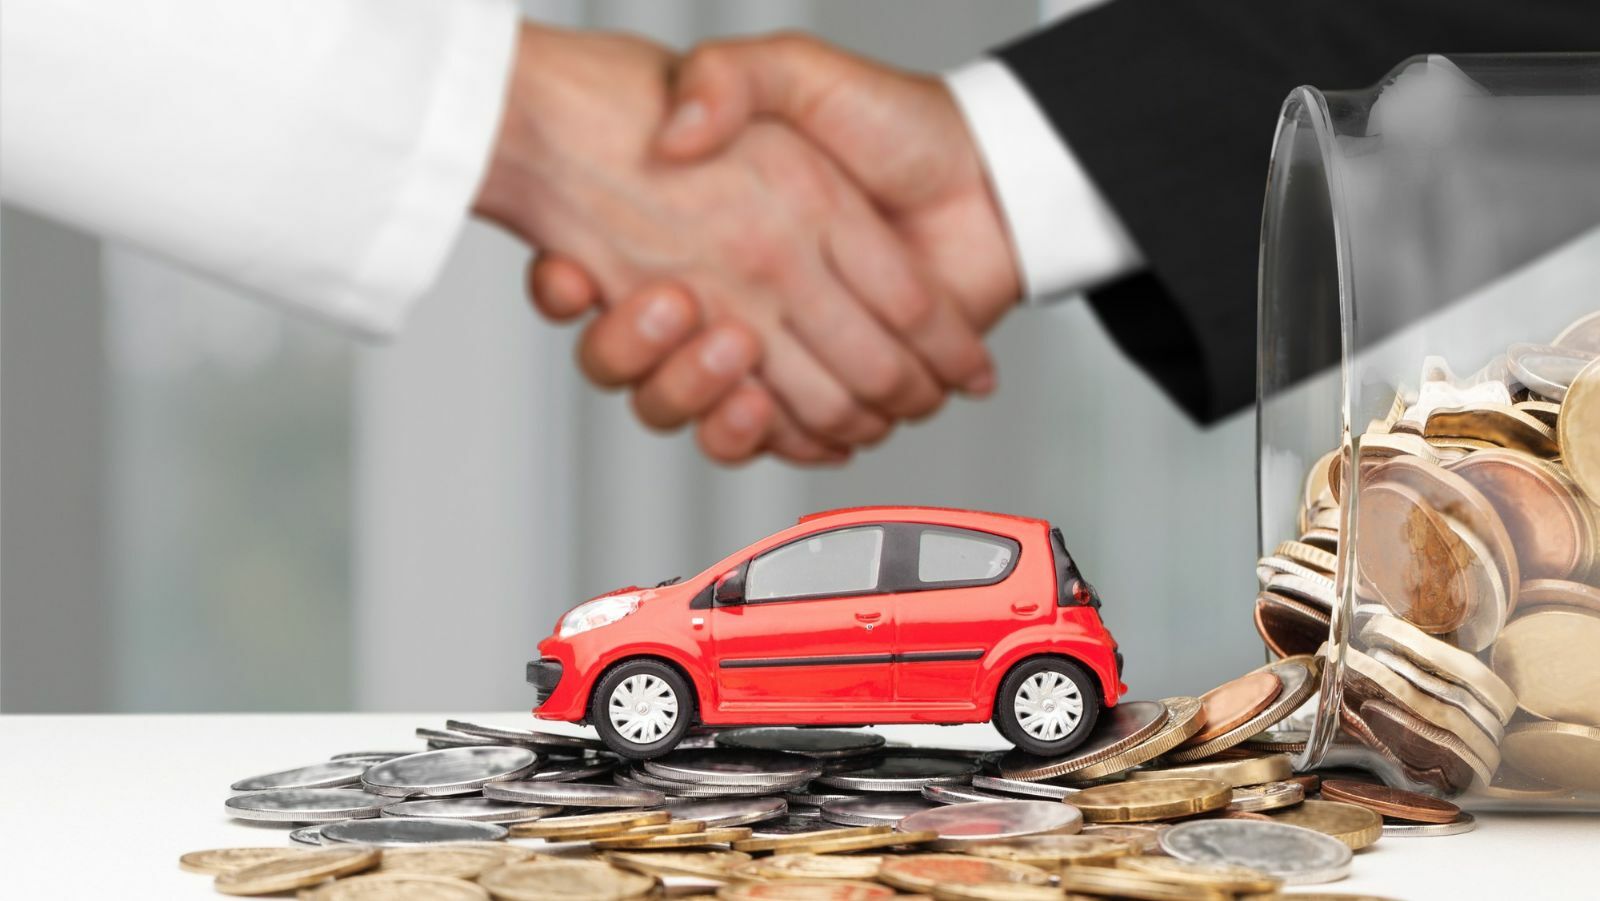 Sicherheitsmaßnahmen beim privaten Autoverkauf – Tipps und Tricks